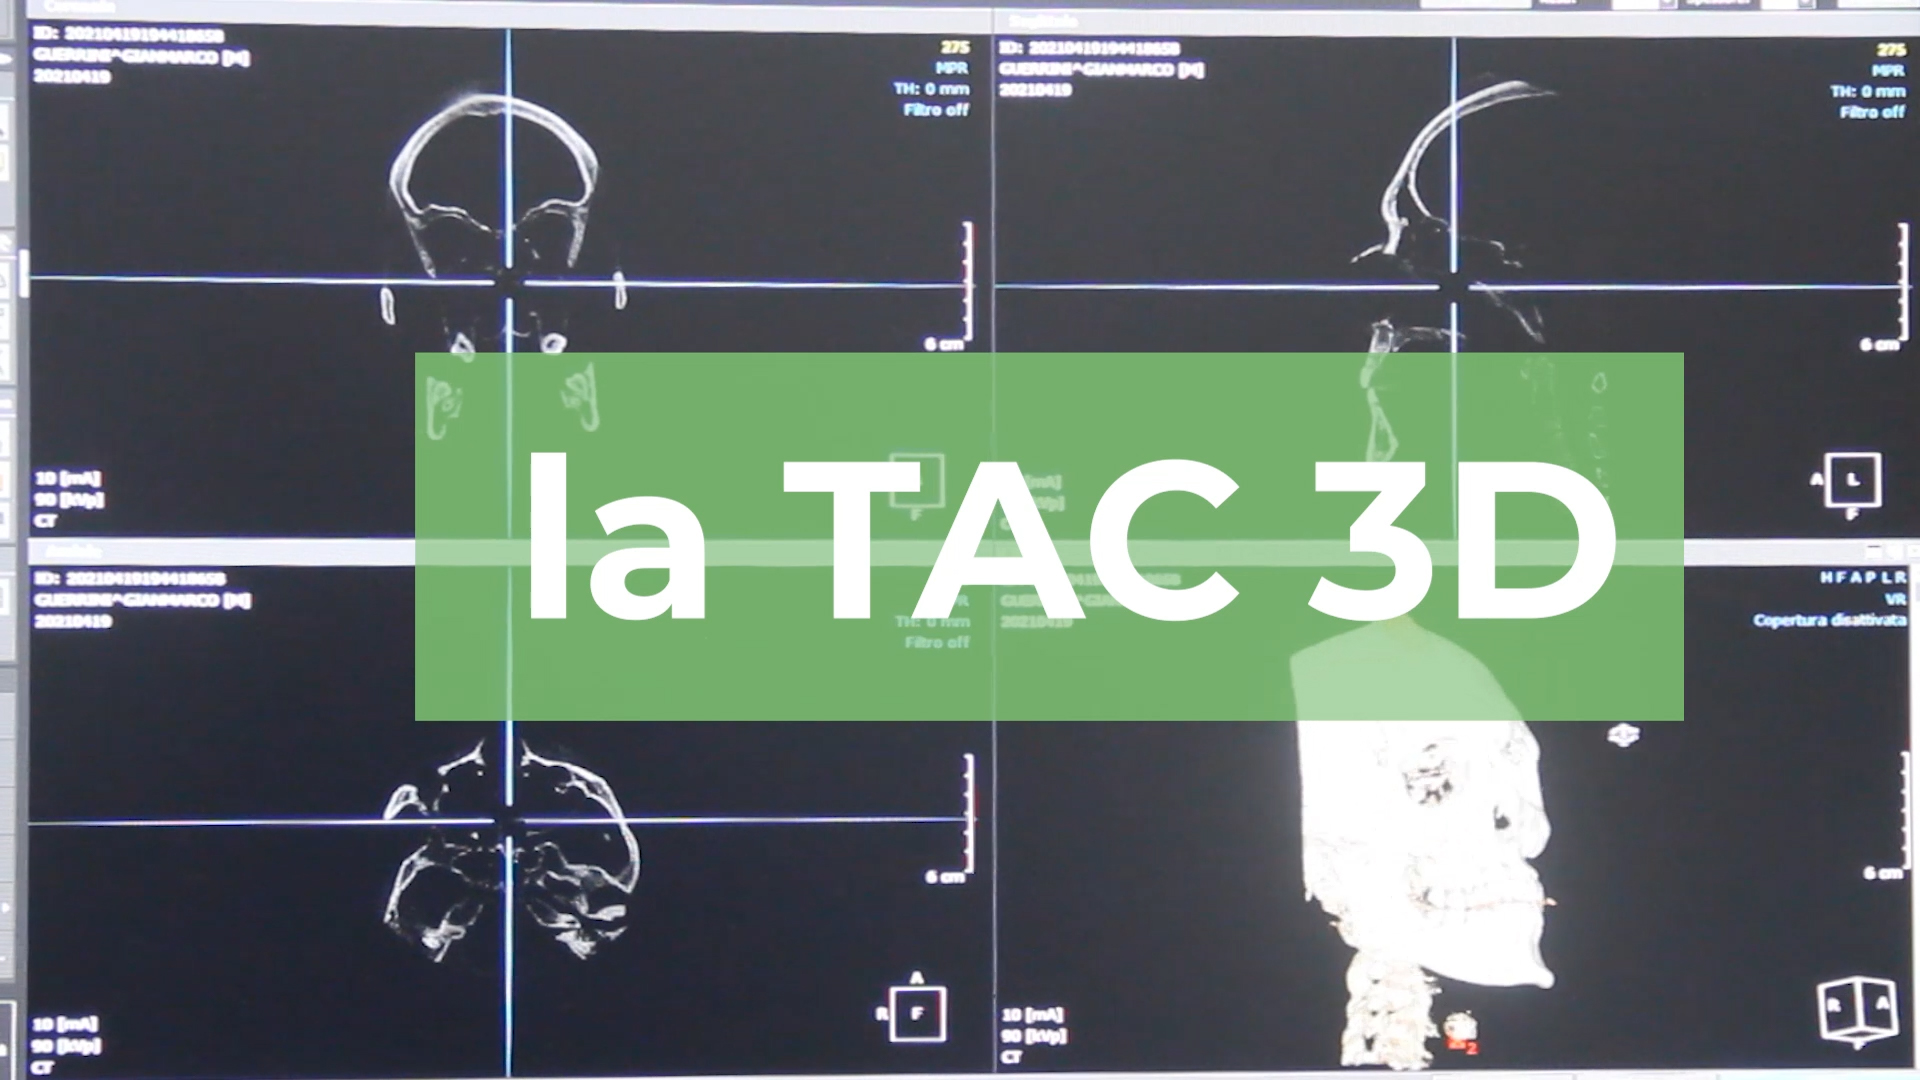 La TAC 3D a bassissima emissione di raggi x